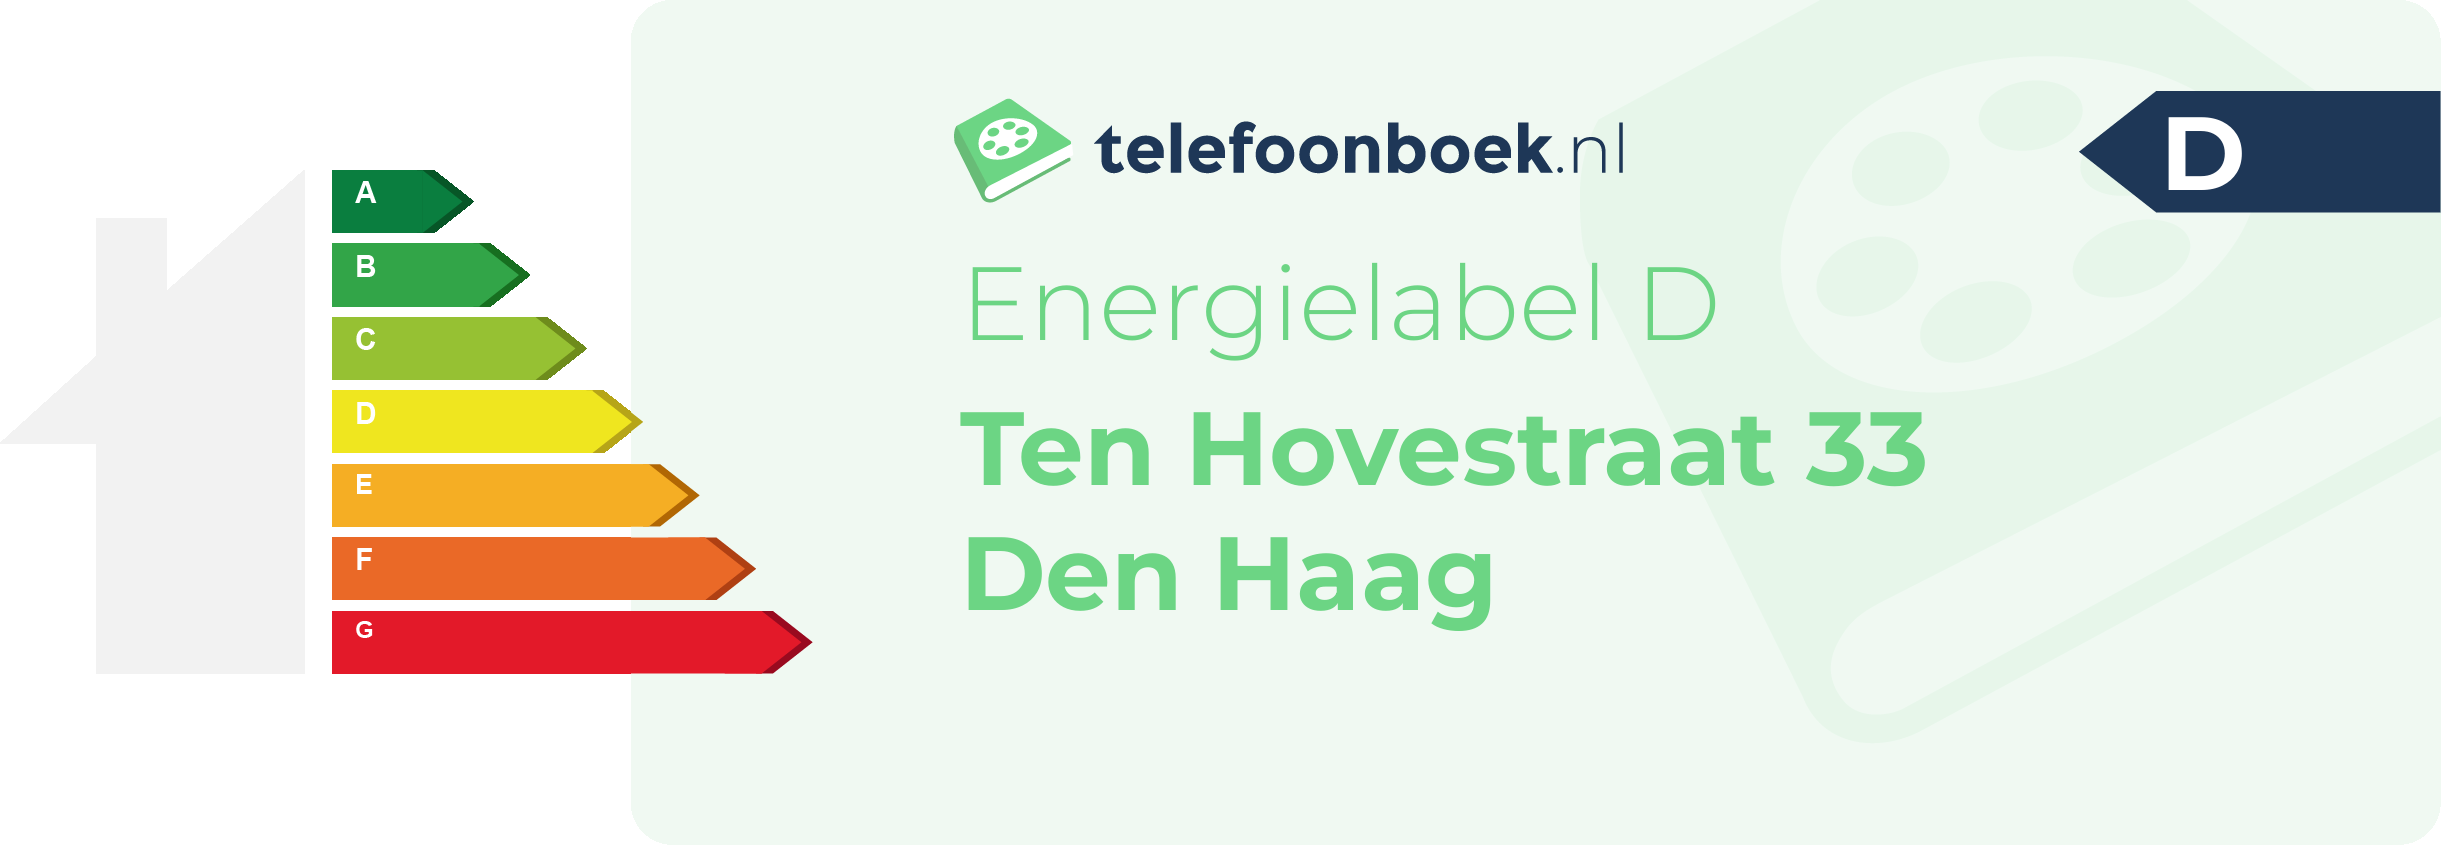 Energielabel Ten Hovestraat 33 Den Haag